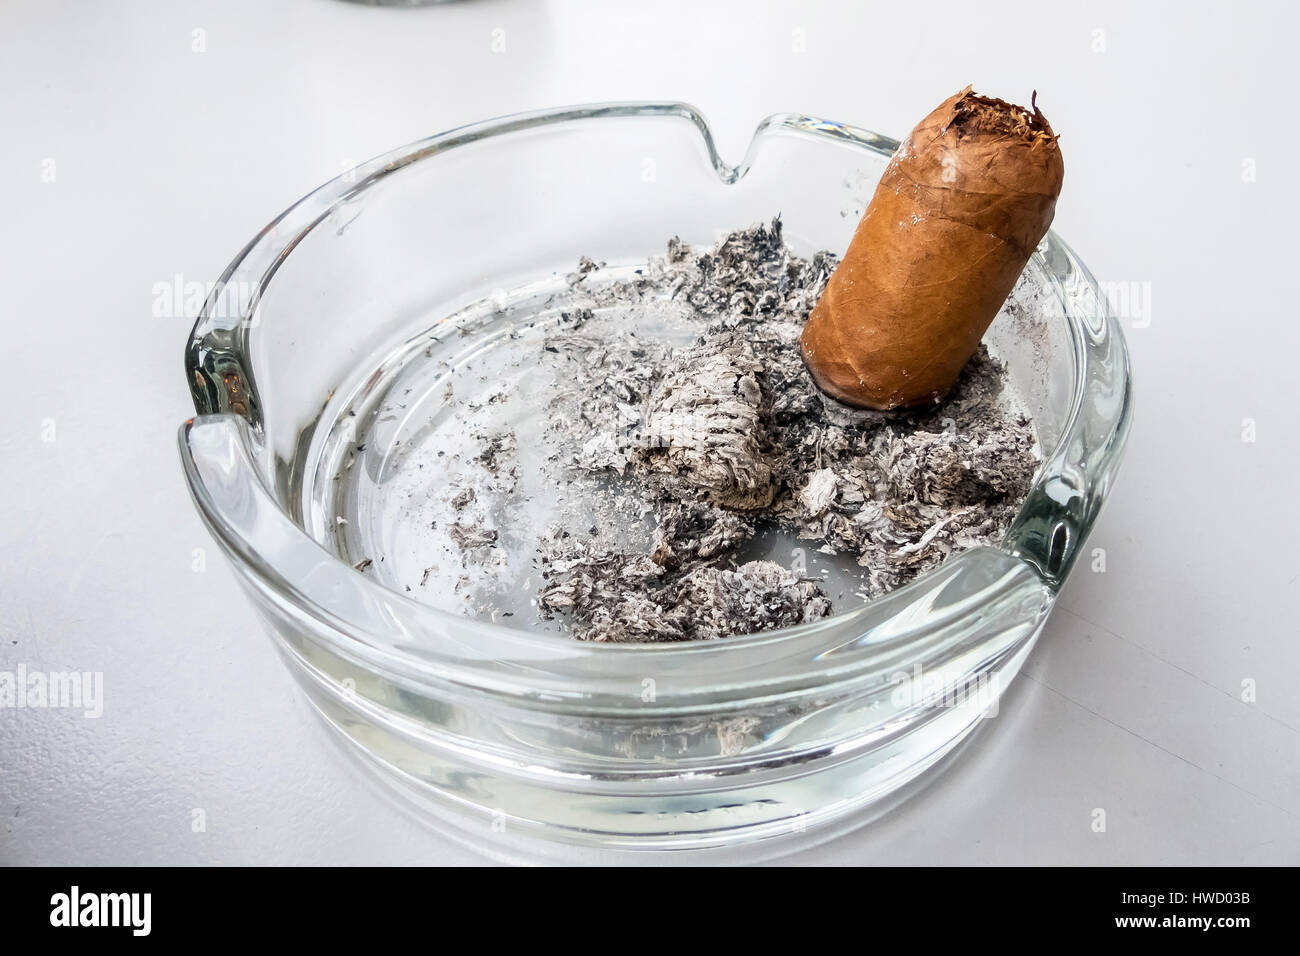 Casi listo fumado puro en un cenicero de cristal, Eine Zigarre fast fertig gerauchte en einem Aschenbecher aus Glas Foto de stock